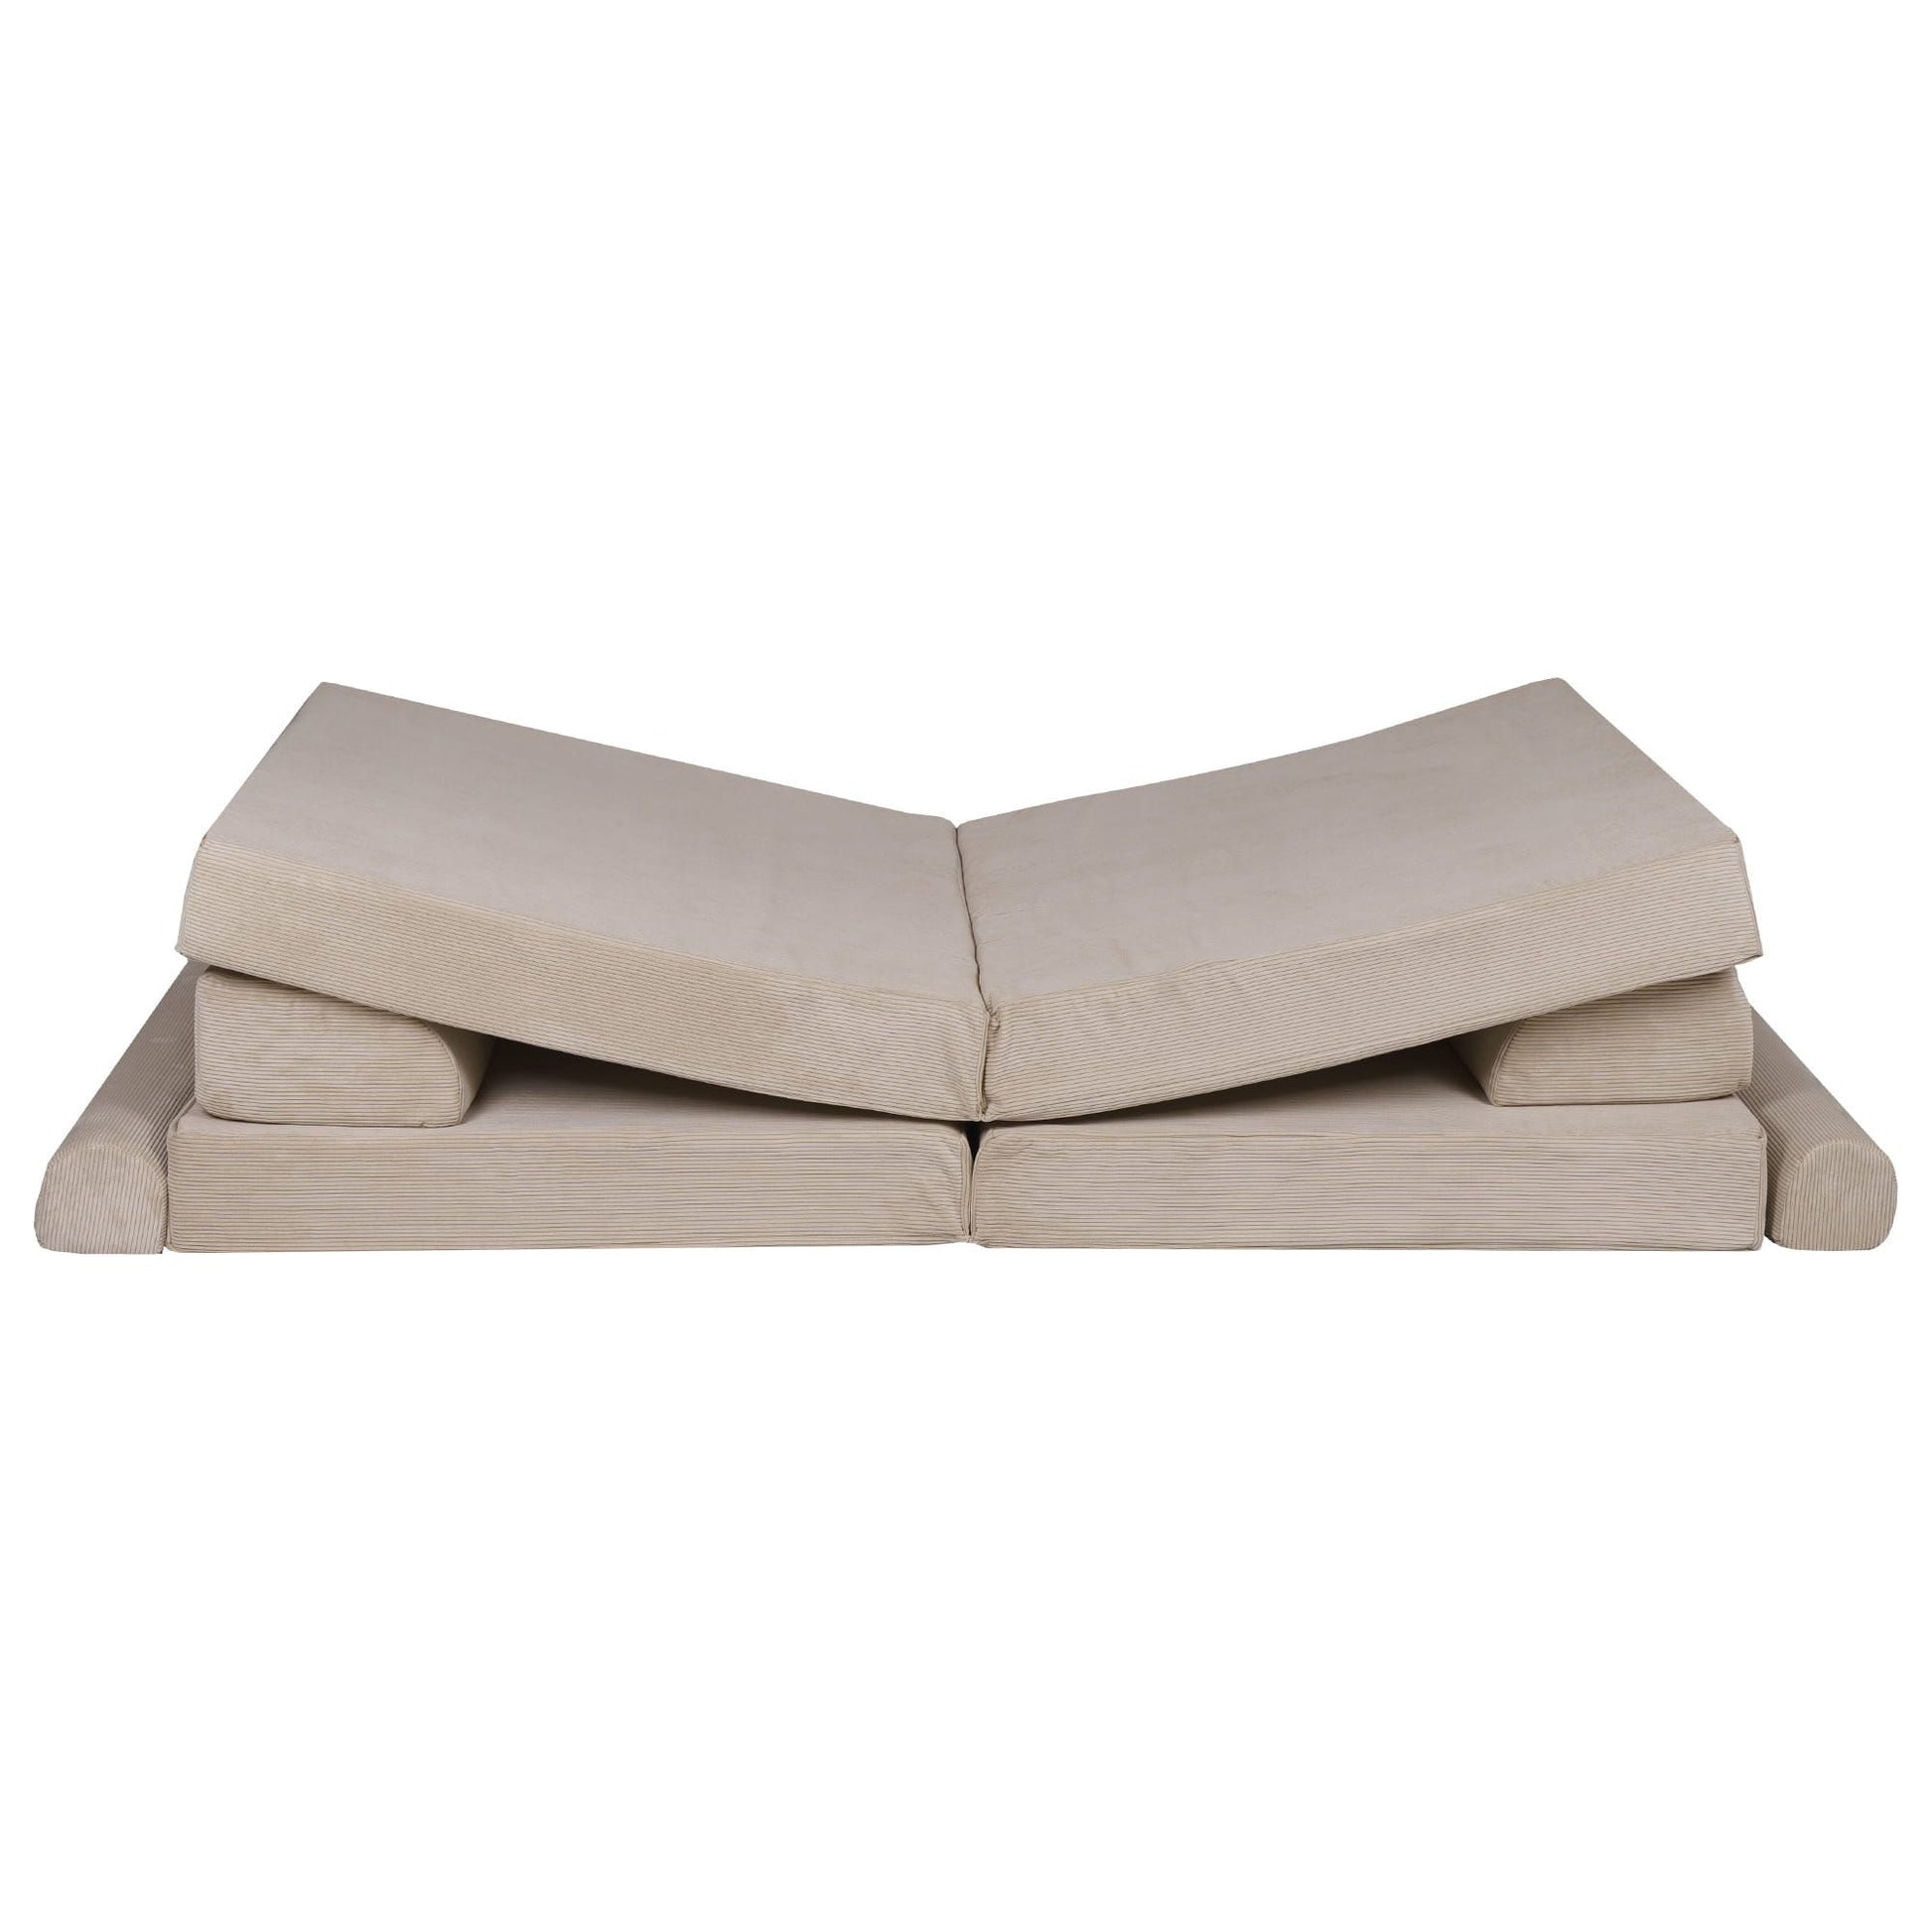 MeowBaby Kids Soft Play Sofa & Fold Out Bed - Corduroy Ecru v shape